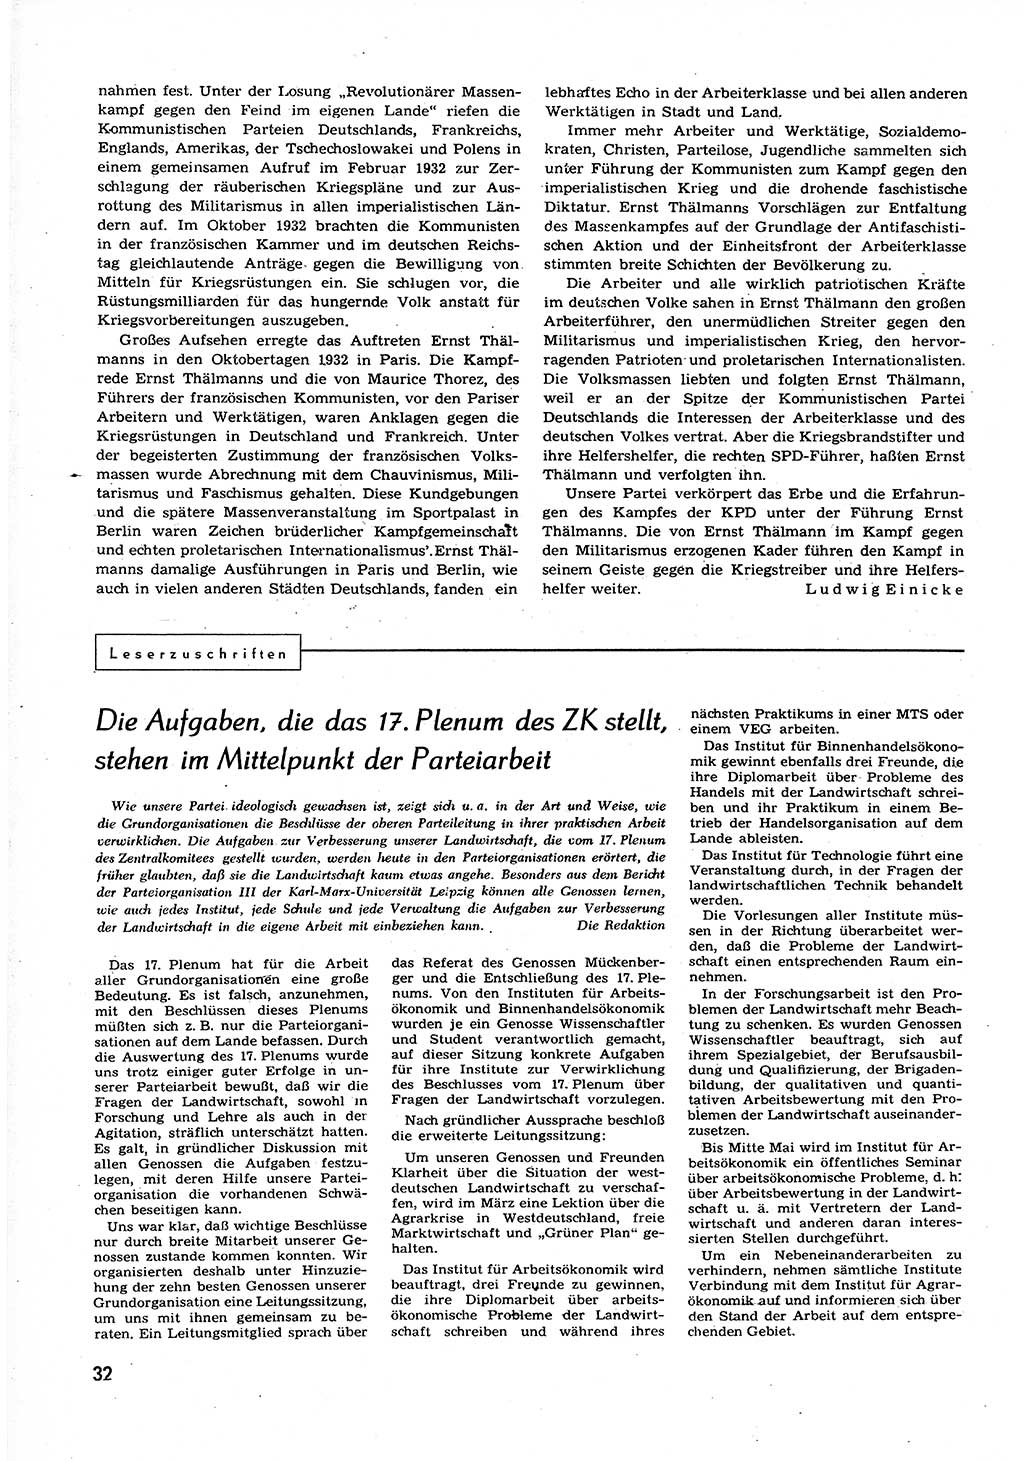 Neuer Weg (NW), Organ des Zentralkomitees (ZK) der SED (Sozialistische Einheitspartei Deutschlands) für alle Parteiarbeiter, 9. Jahrgang [Deutsche Demokratische Republik (DDR)] 1954, Heft 7/32 (NW ZK SED DDR 1954, H. 7/32)